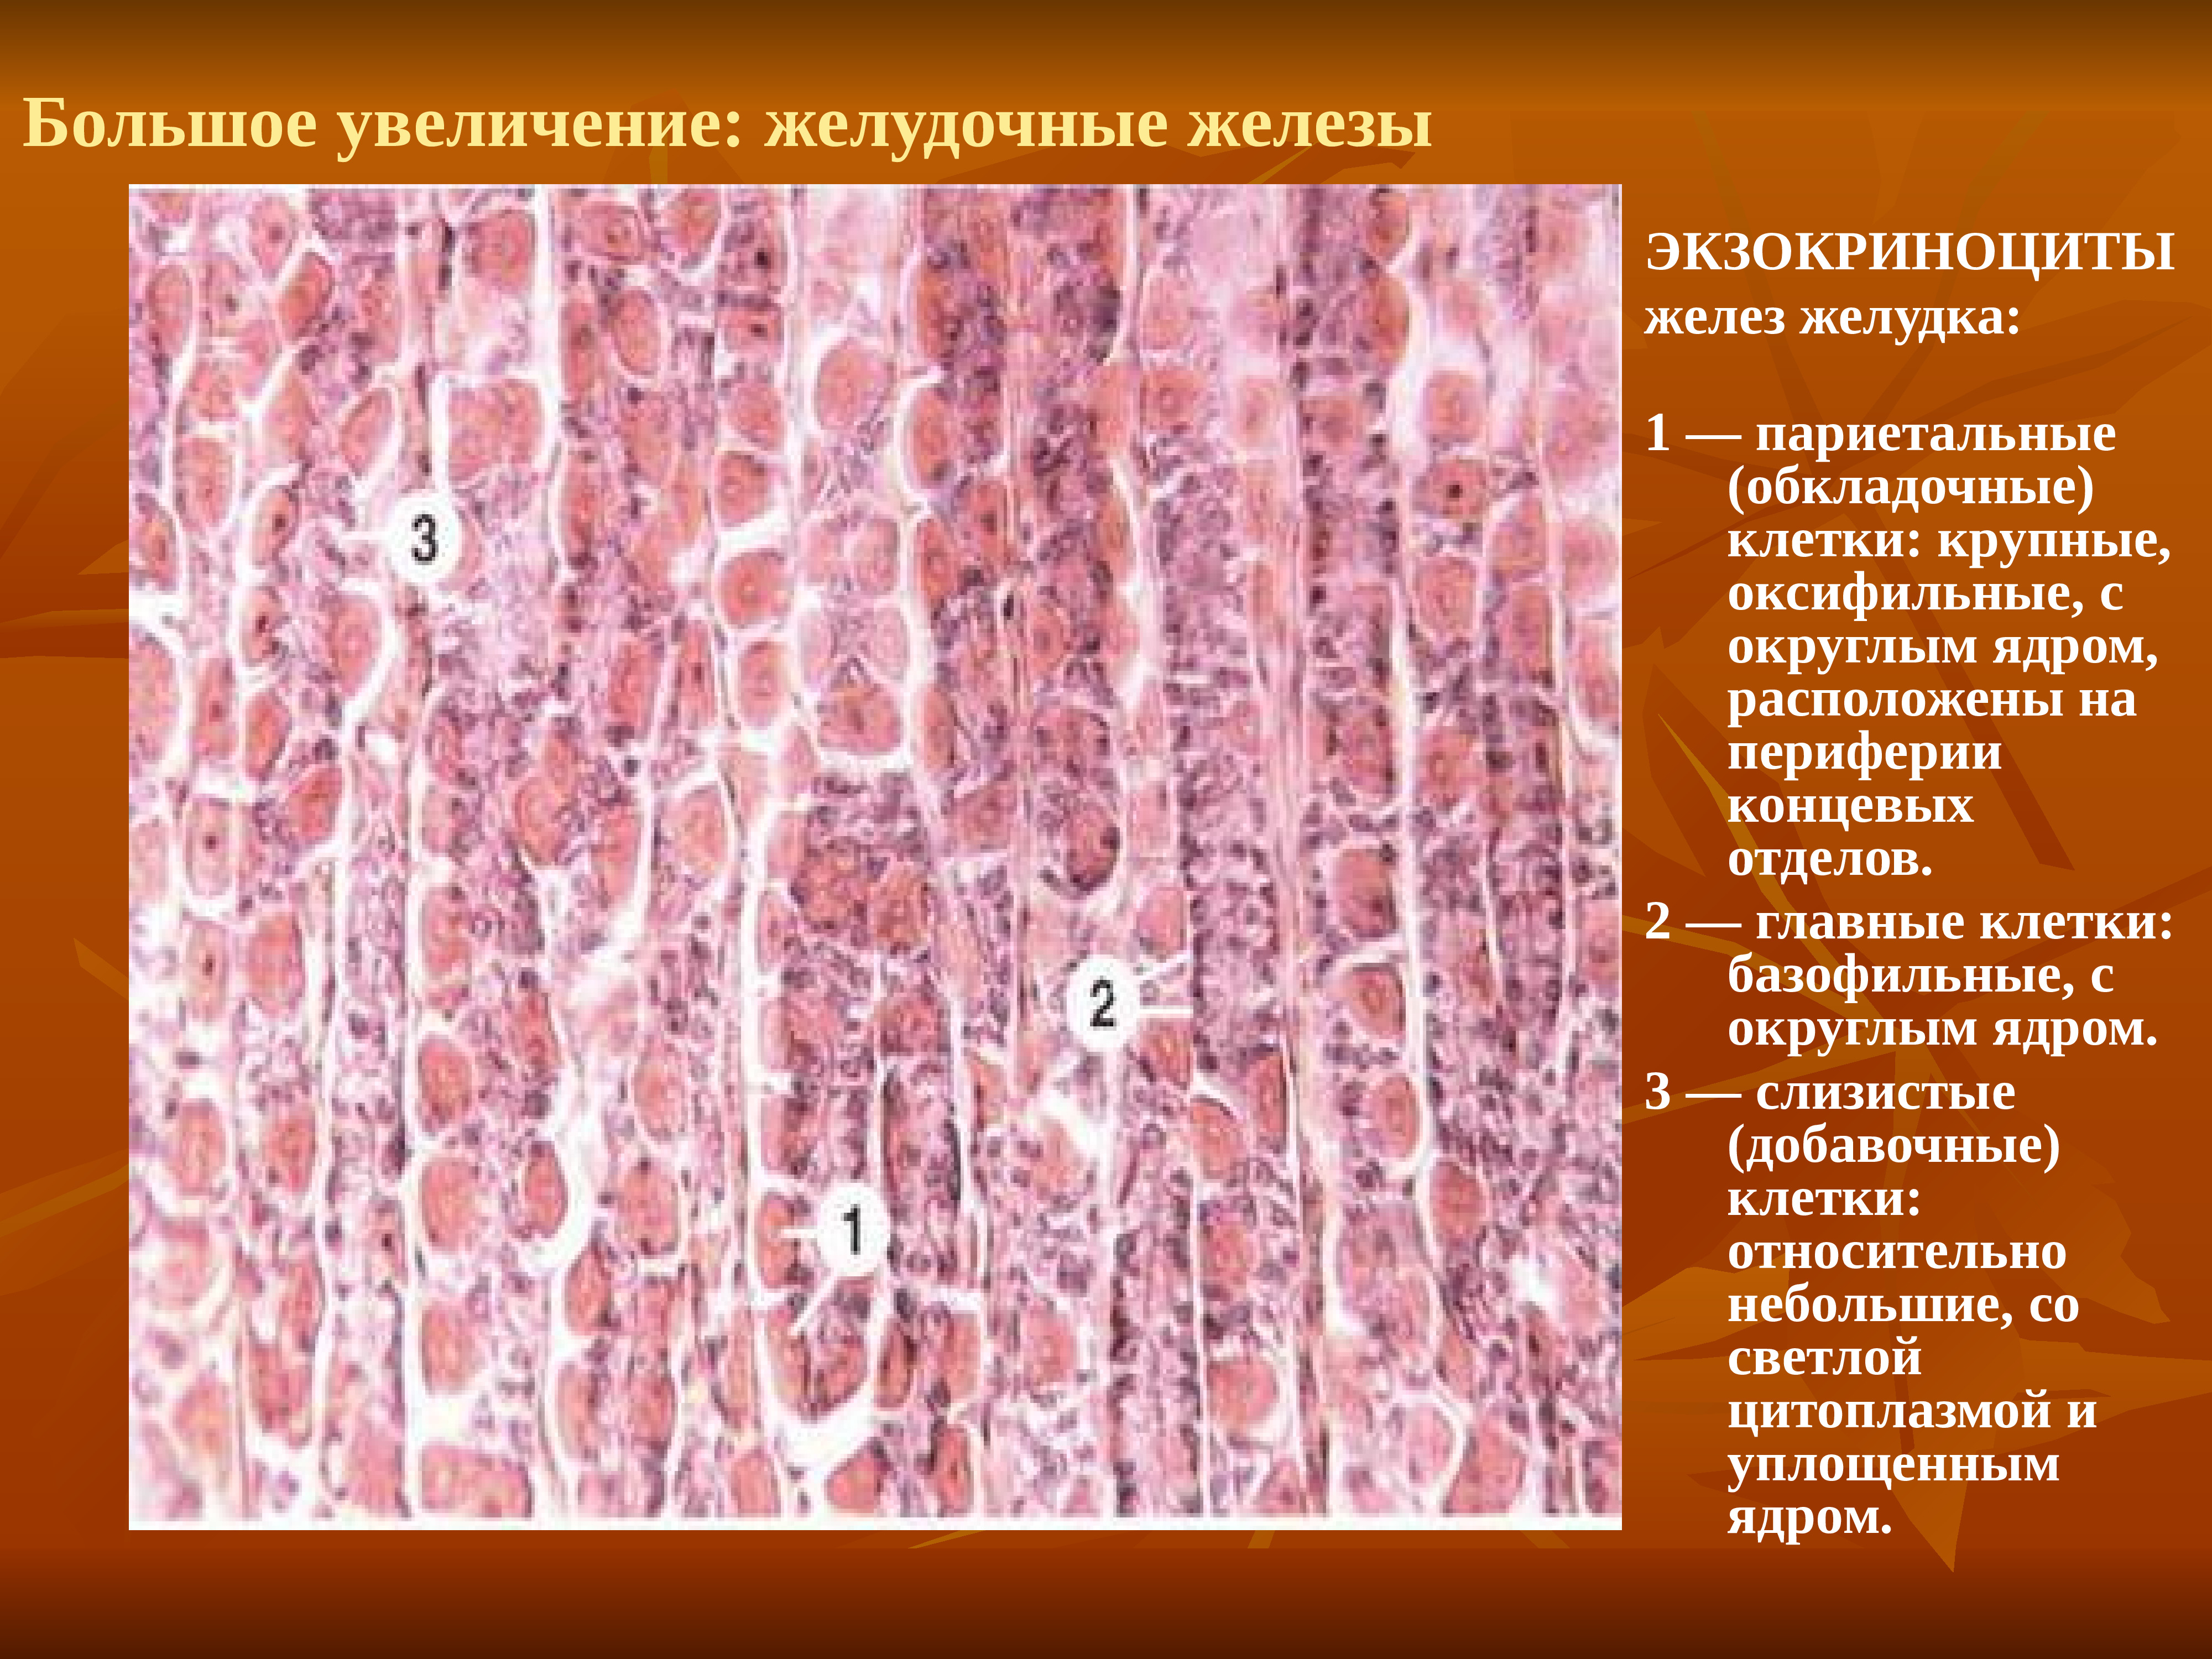 Клетки пищеварительных желез. Главные экзокриноциты желудка гистология. Париетальные клетки слизистой оболочки желудка секретируют. Париетальный экзокриноцит железы желудка. Главные клетки желез желудка гистология.